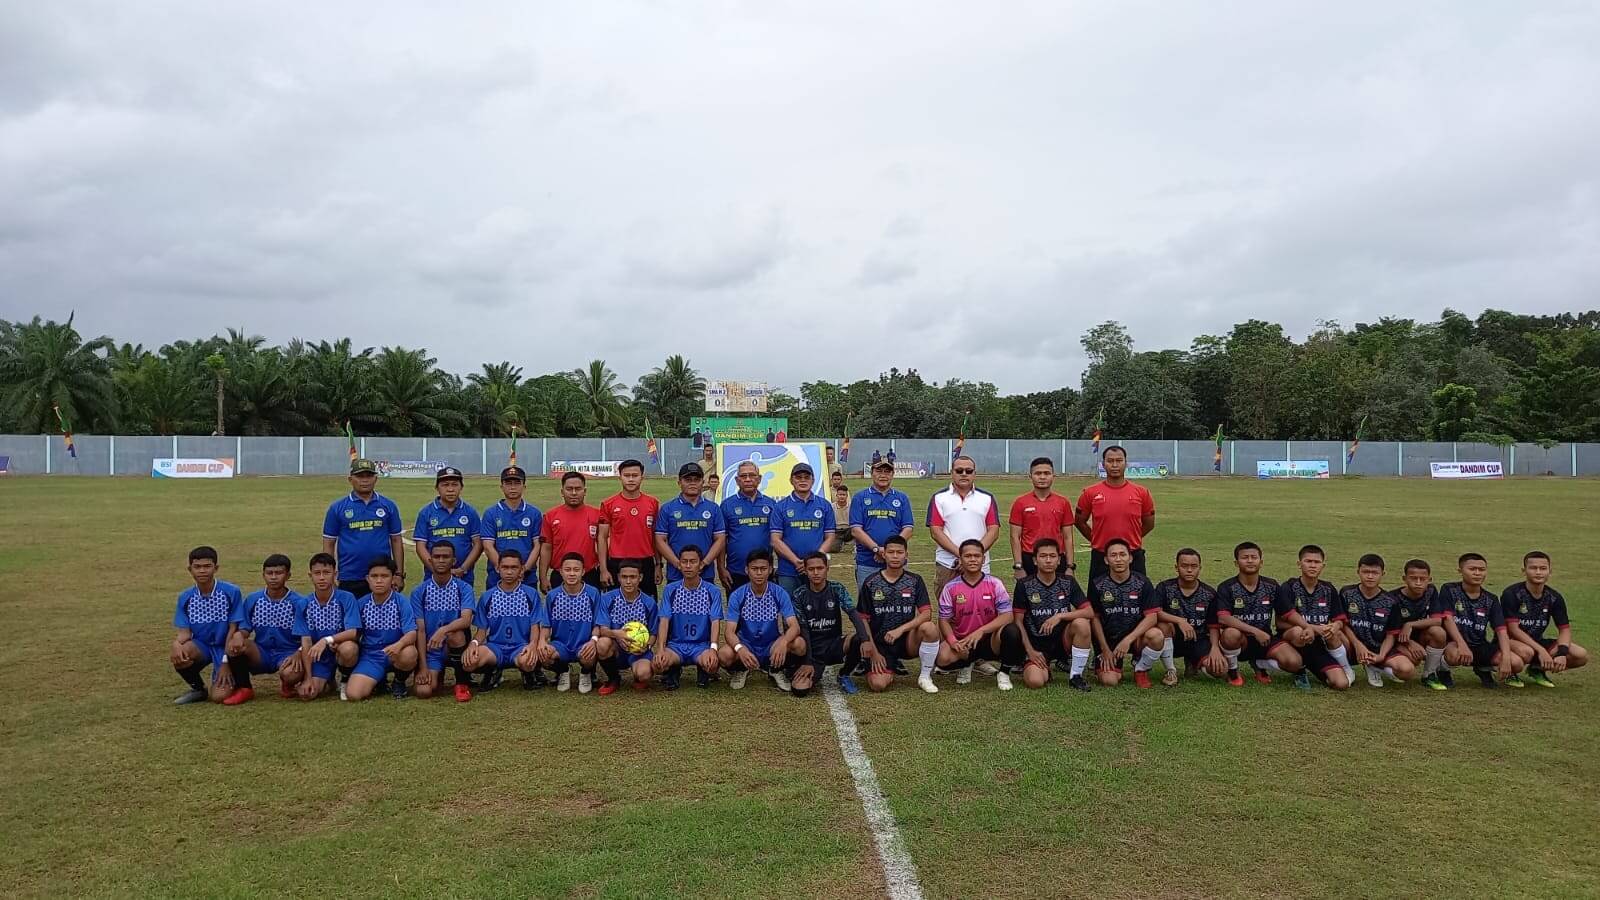 Turnamen Piala Bergilir Dandim 0408 Bengkulu Selatan/Kaur: 16 Tim U16 Berlaga di Stadion Padang Panjang